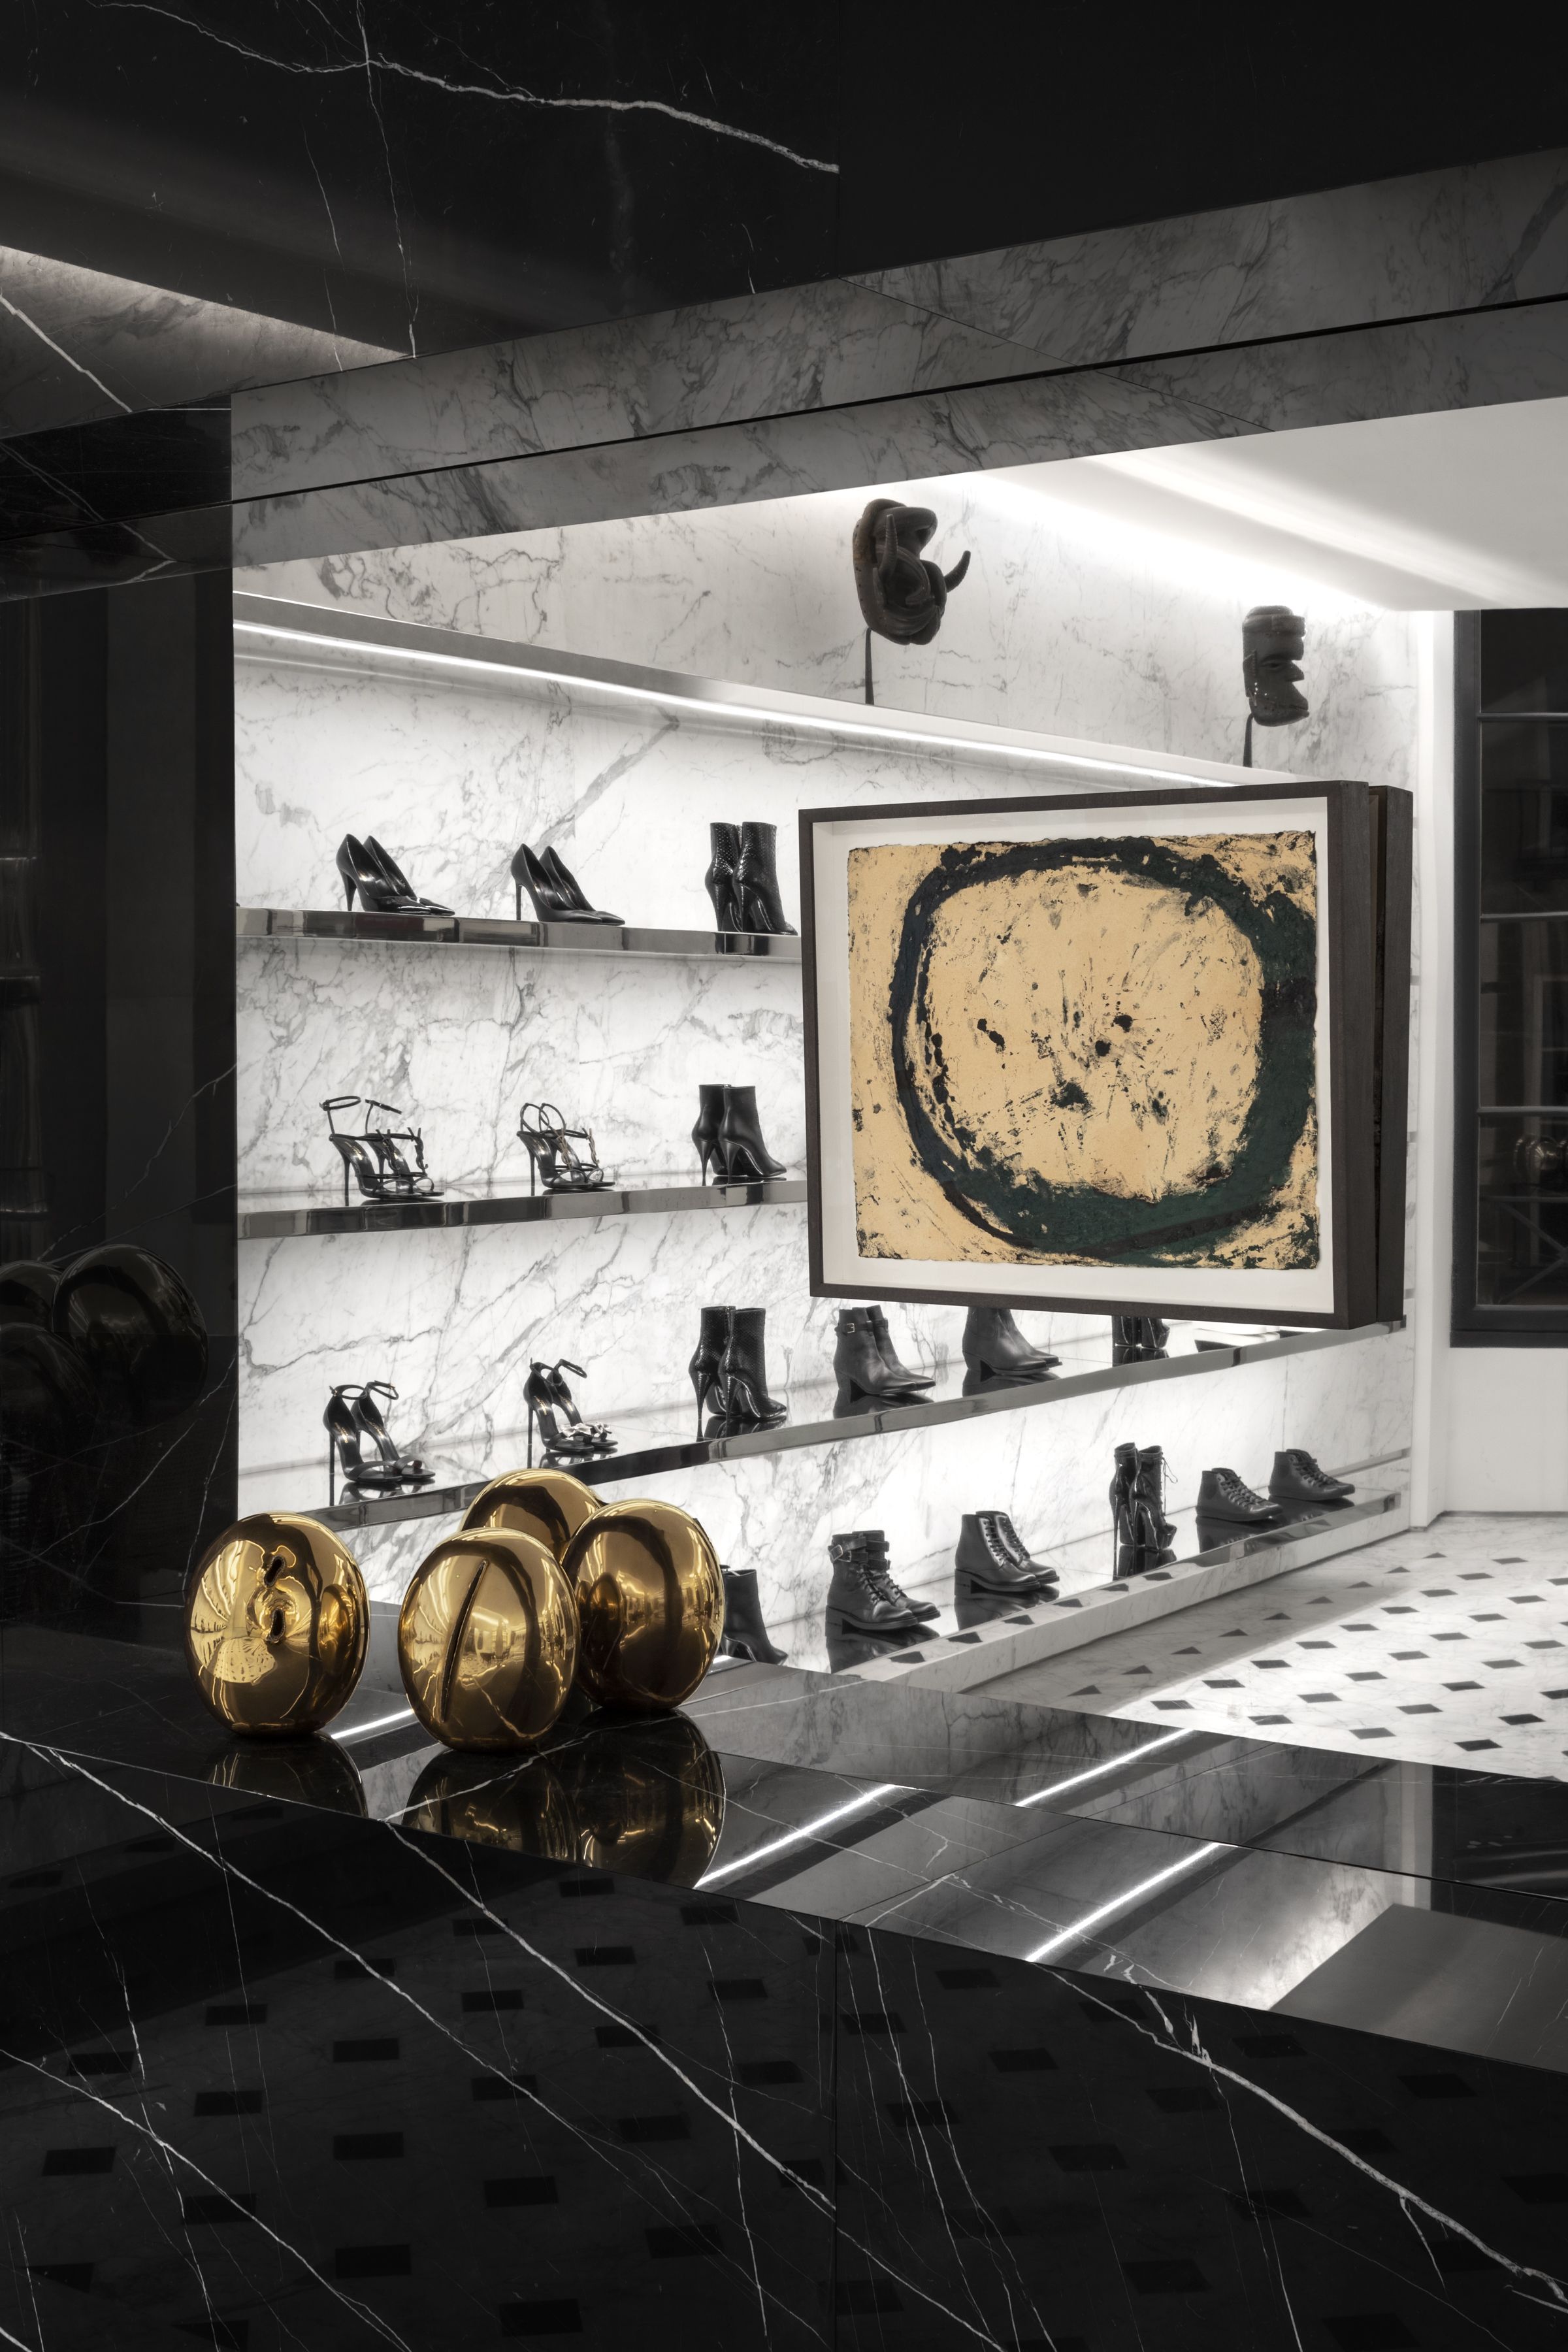 London: Louis Vuitton store renewal